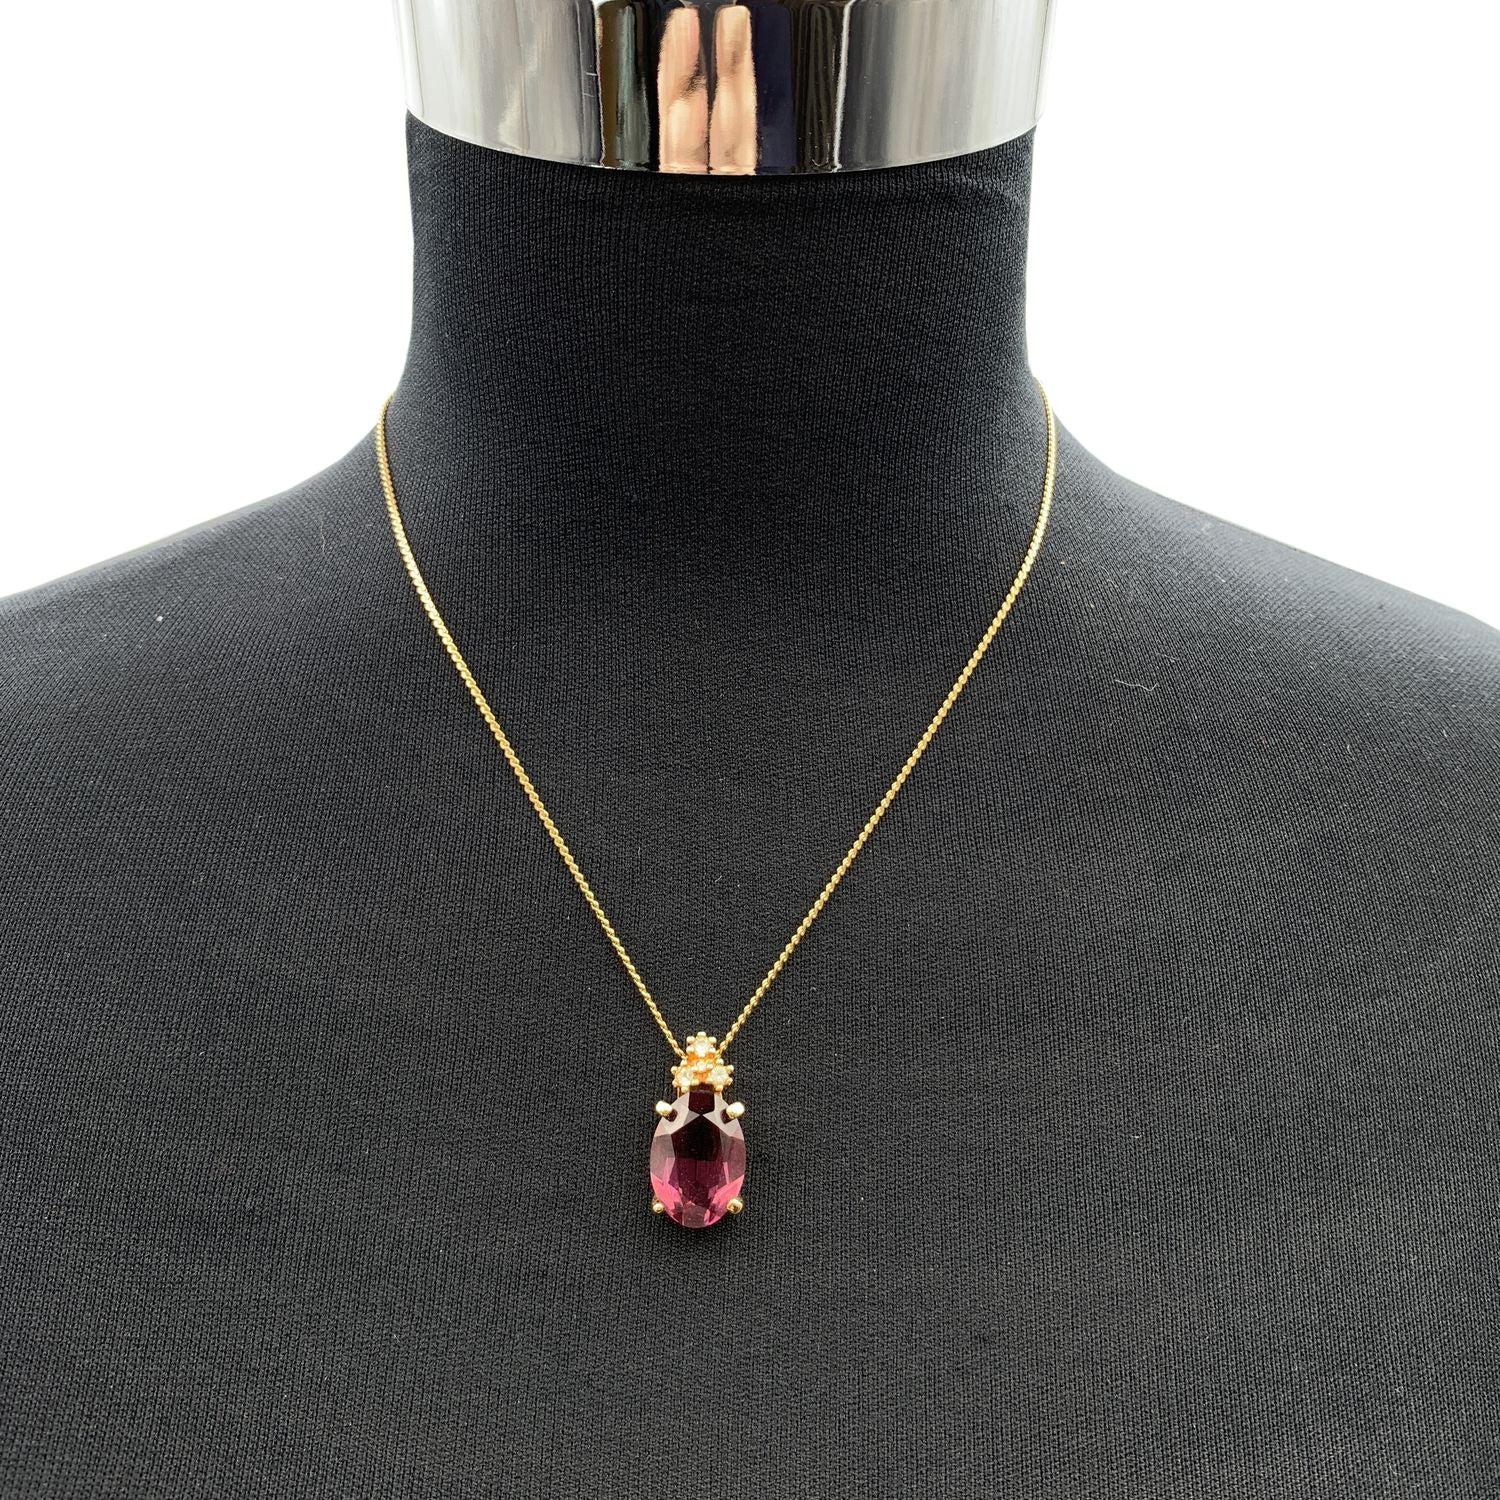 Vintage Christian Dior Goldmetallkette mit ovalem lila Kristall, der von 3 kleinen weißen Strasssteinen umgeben ist. Federringverschluss. Kleiner CD-Charme am Ende der Halskette. Kettenlänge: ca. 16,5 Zoll - 41,8 cm Zustand A - AUSGEZEICHNET